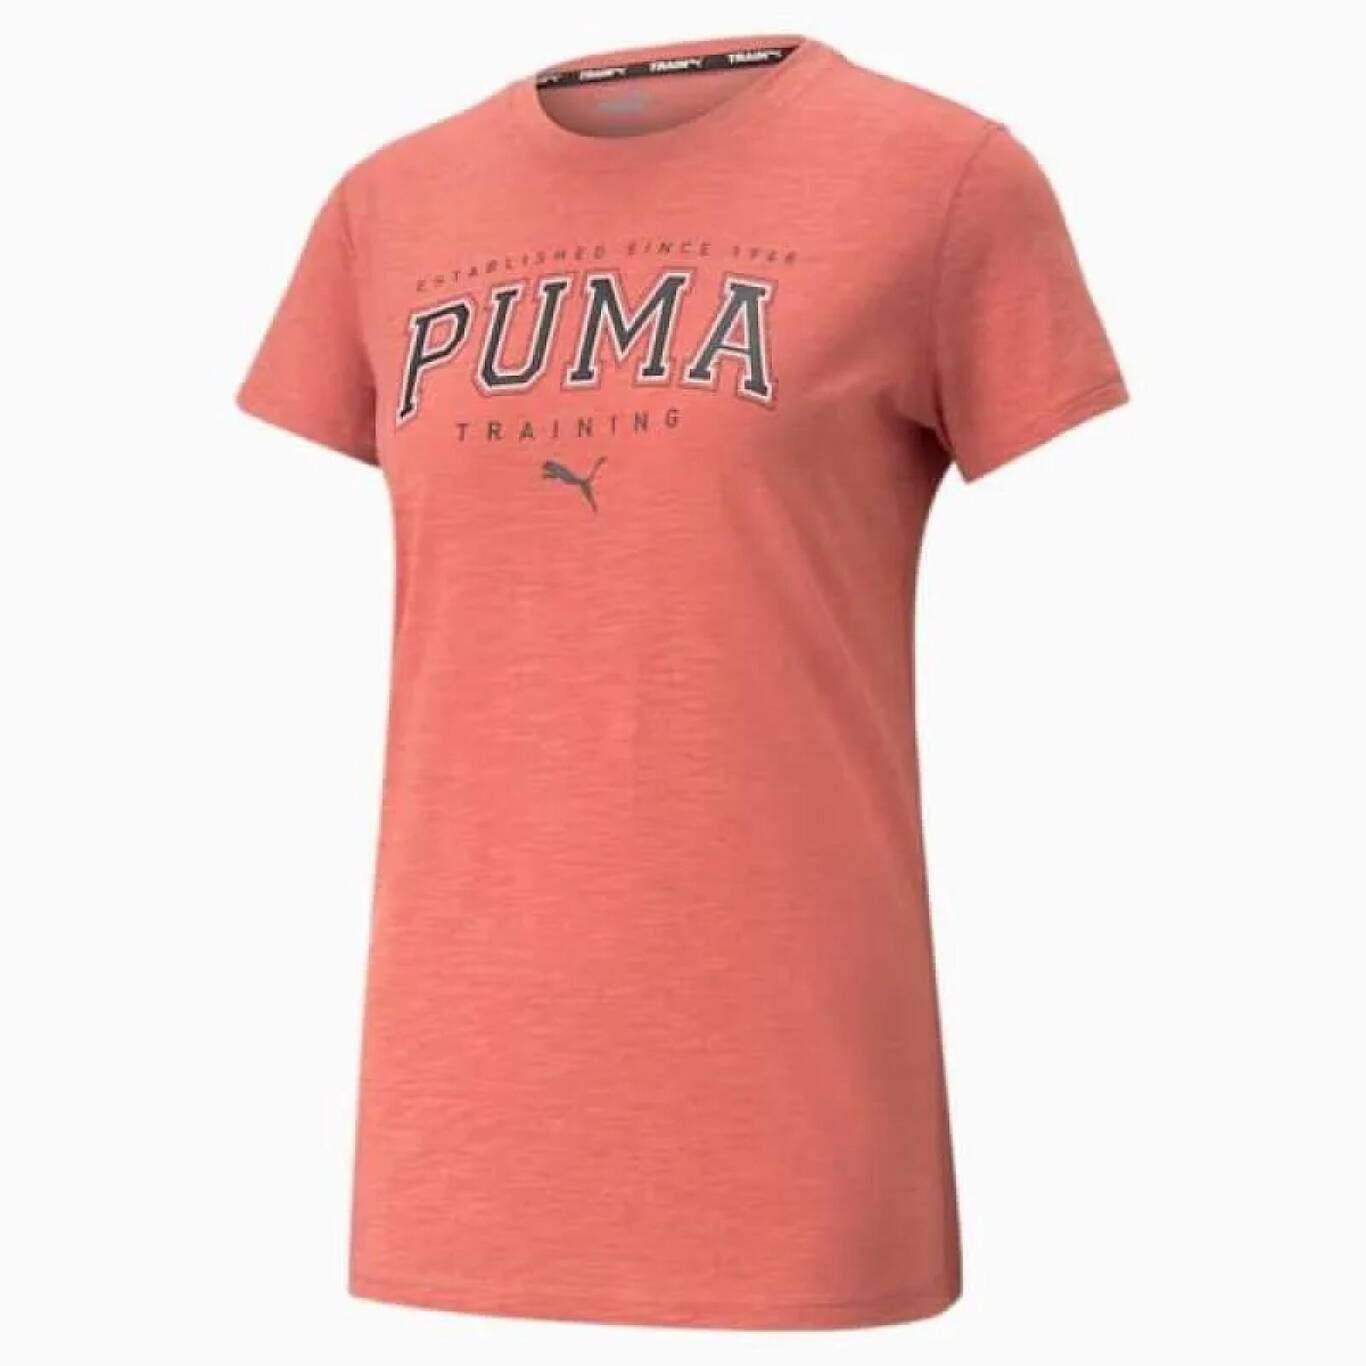 PUMA T-shirt Fitness Wanita Katun Print Logo Lengan Pendek Warna Pink